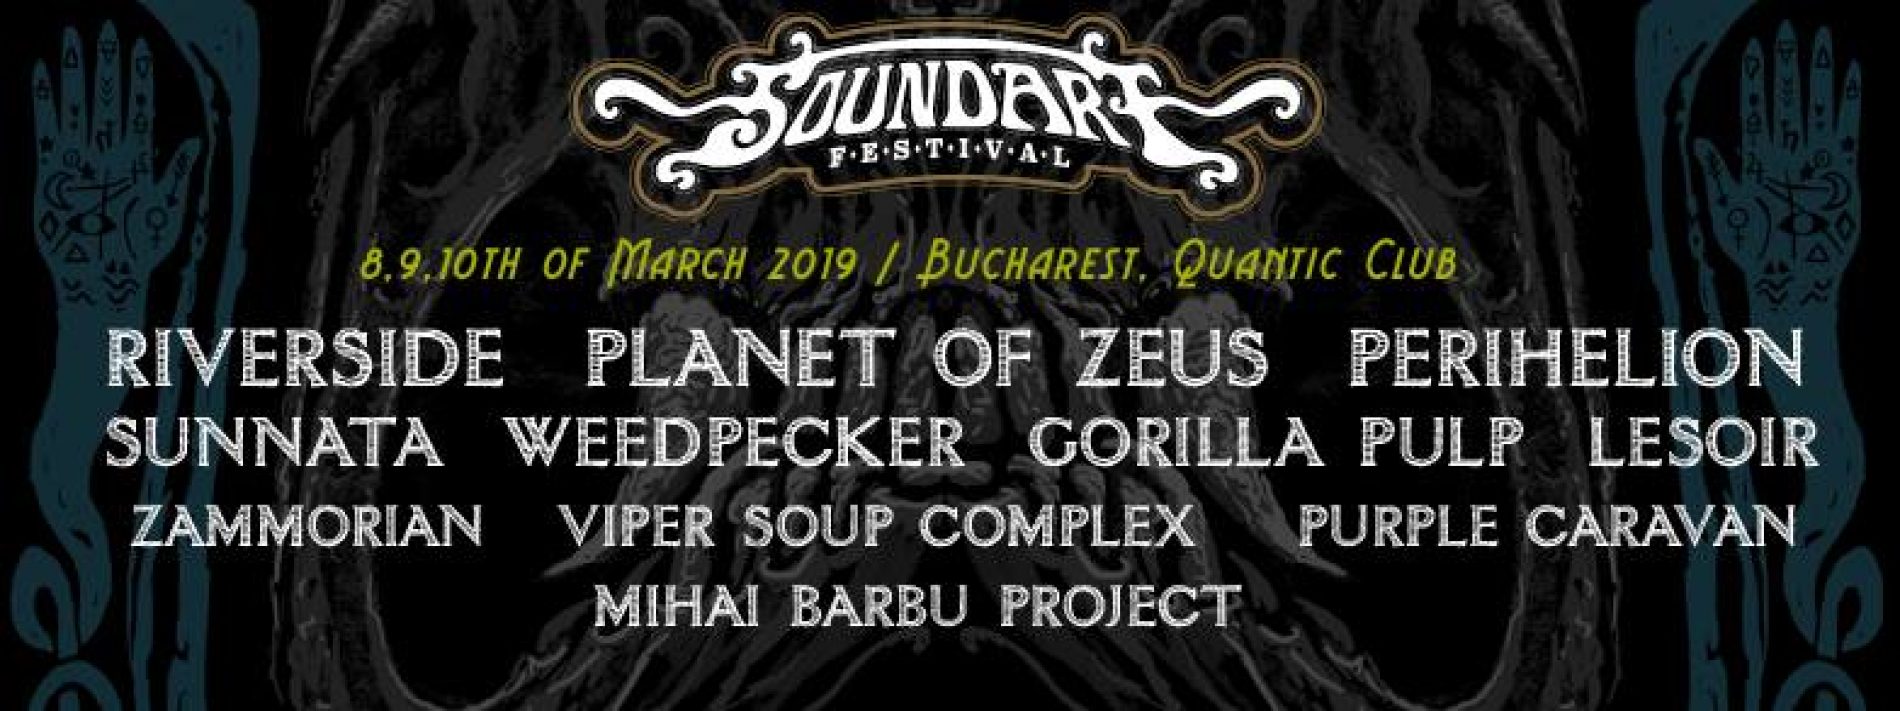 Recenzie Concert: Soundart Festival – Ziua 1 (8 martie 2019)